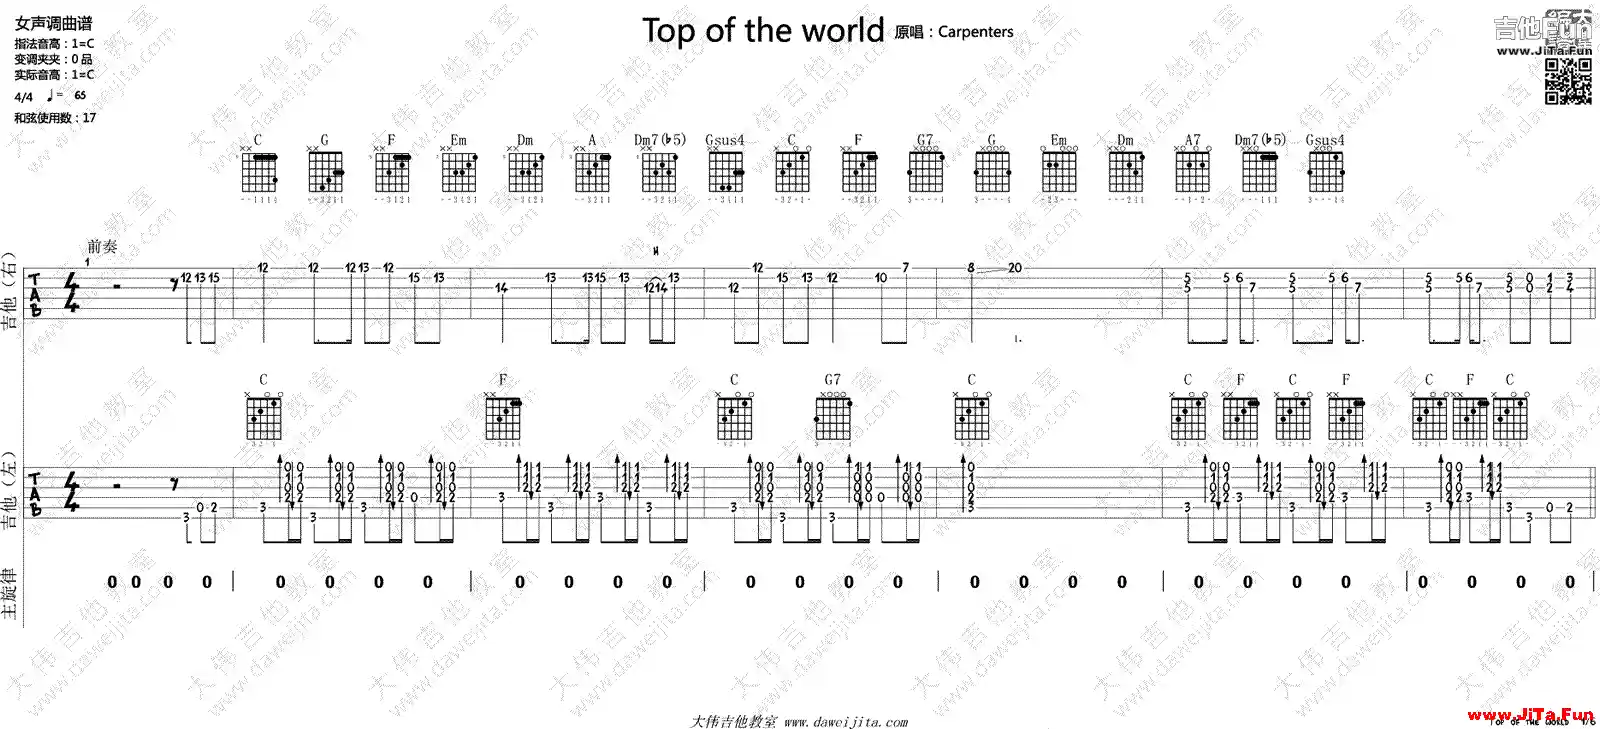 Top Of The World吉他譜 世界之巔吉他譜